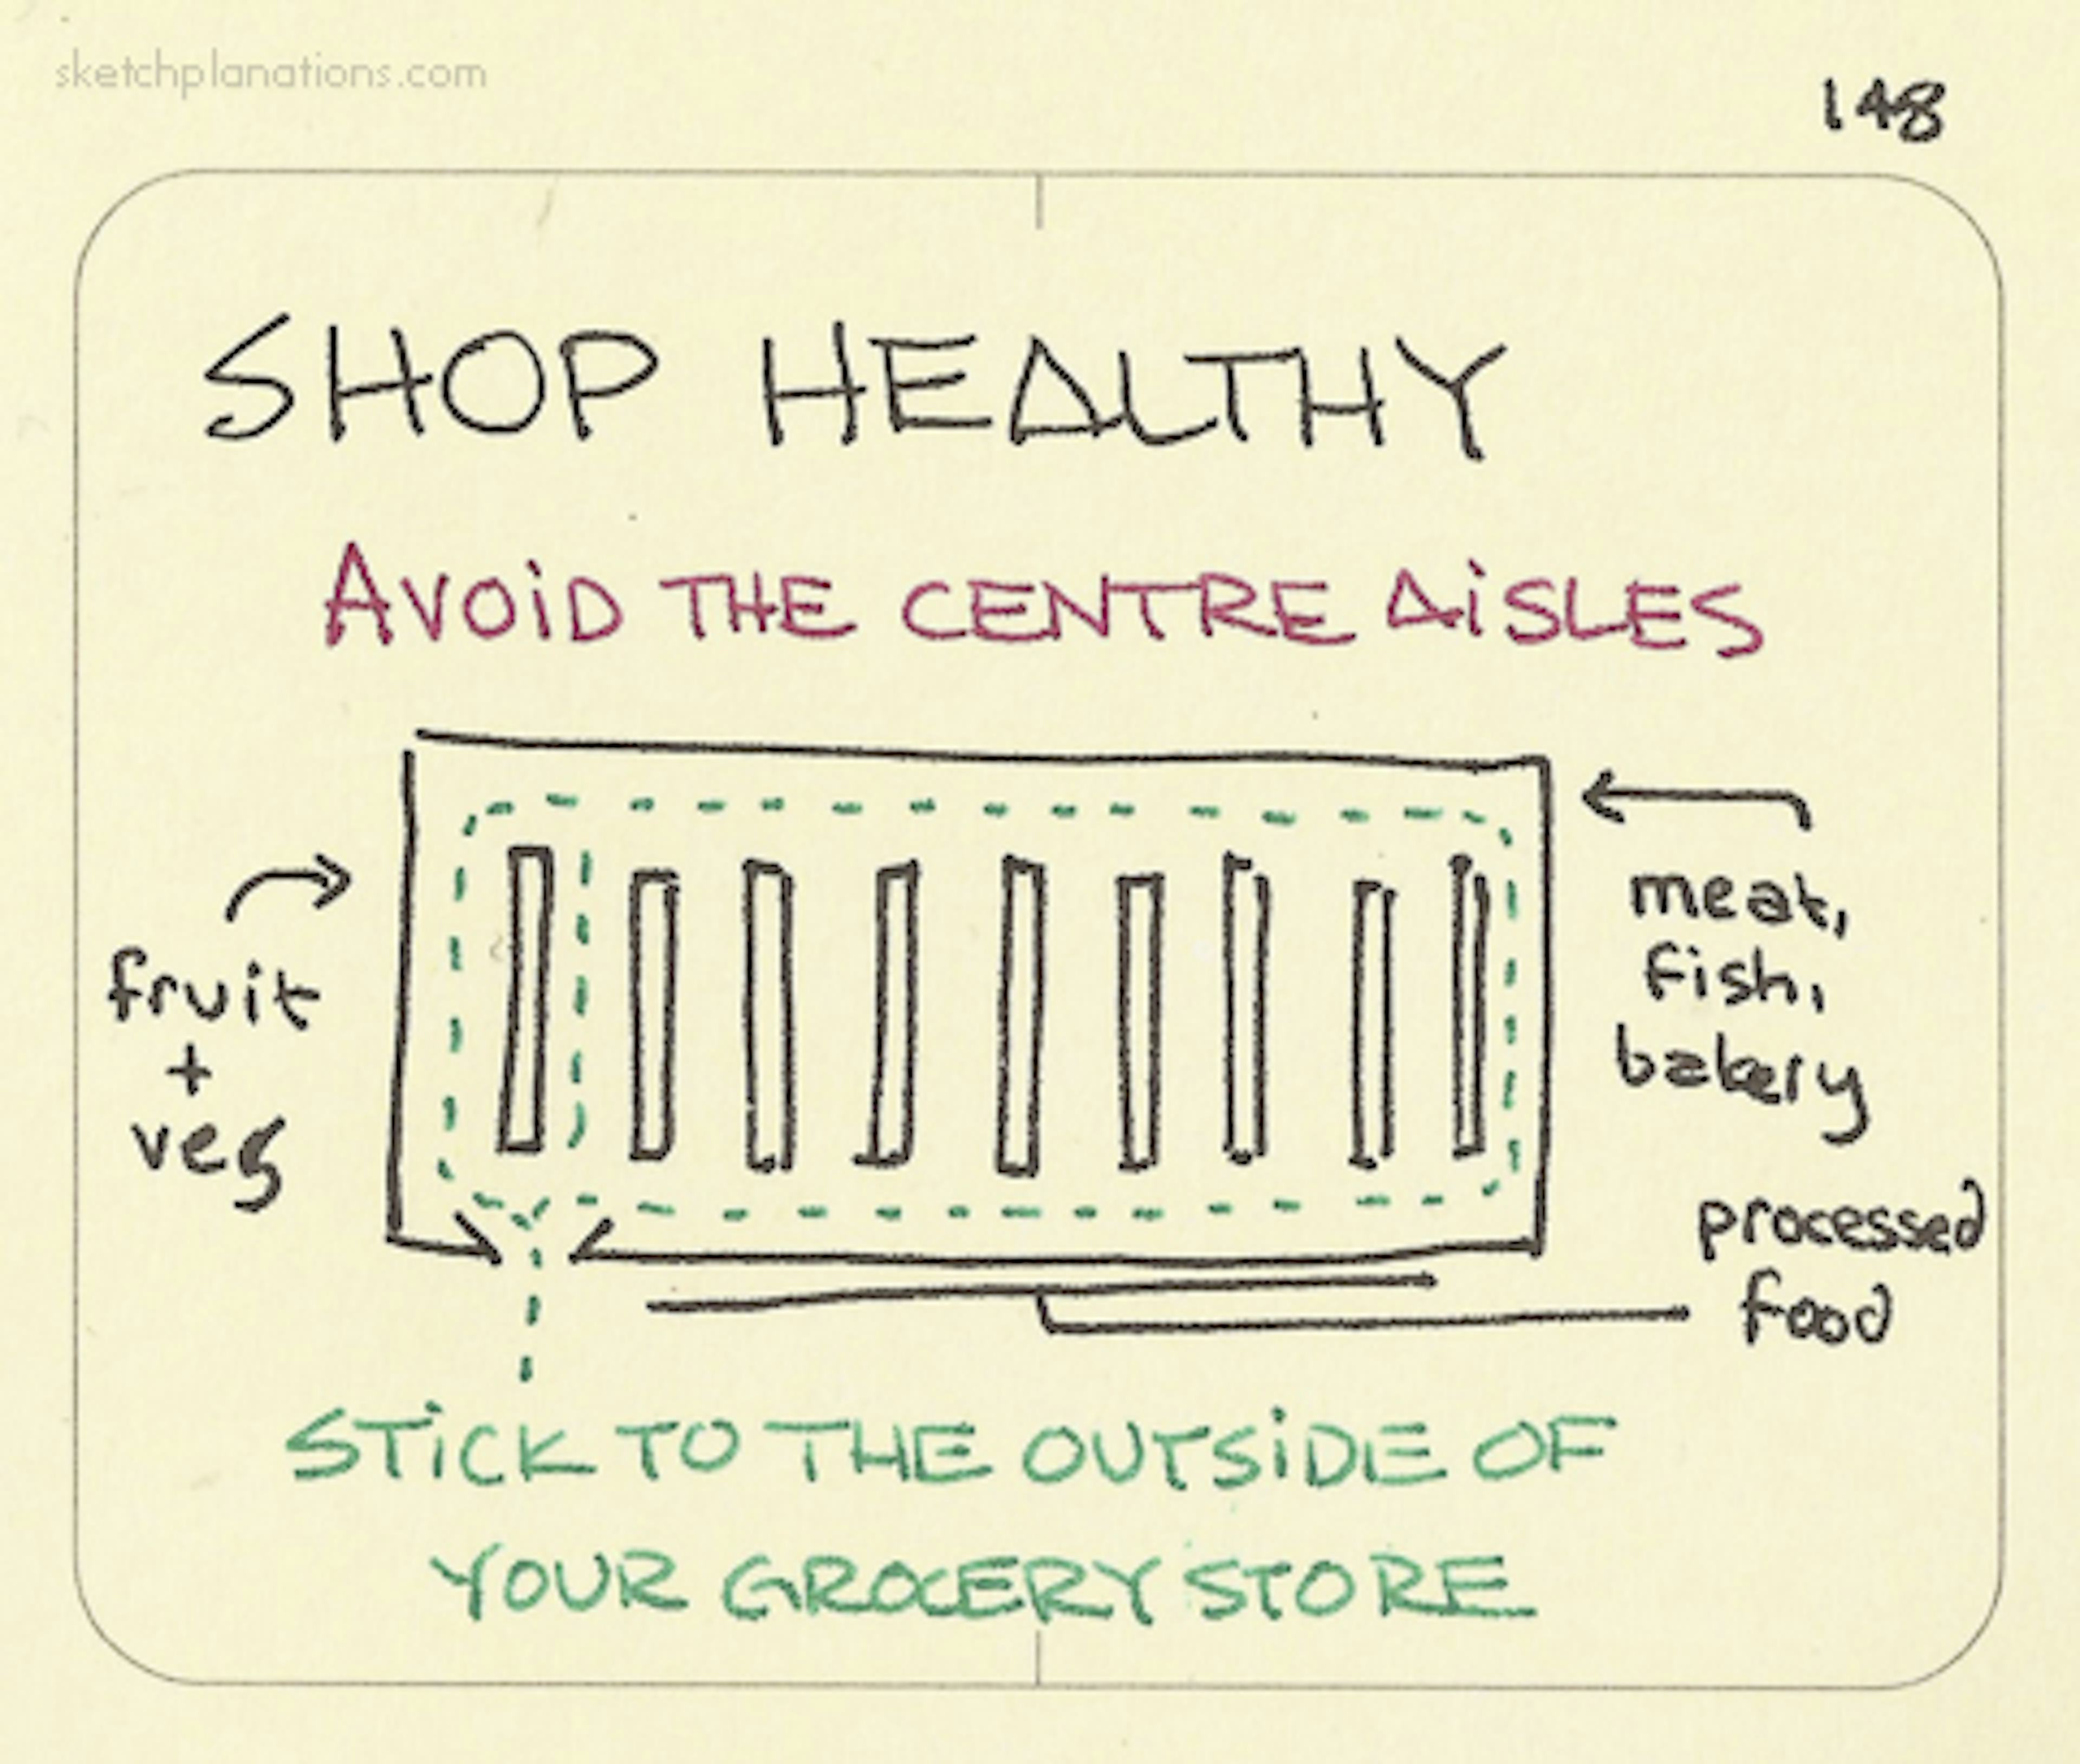 Shop healthy - Sketchplanations